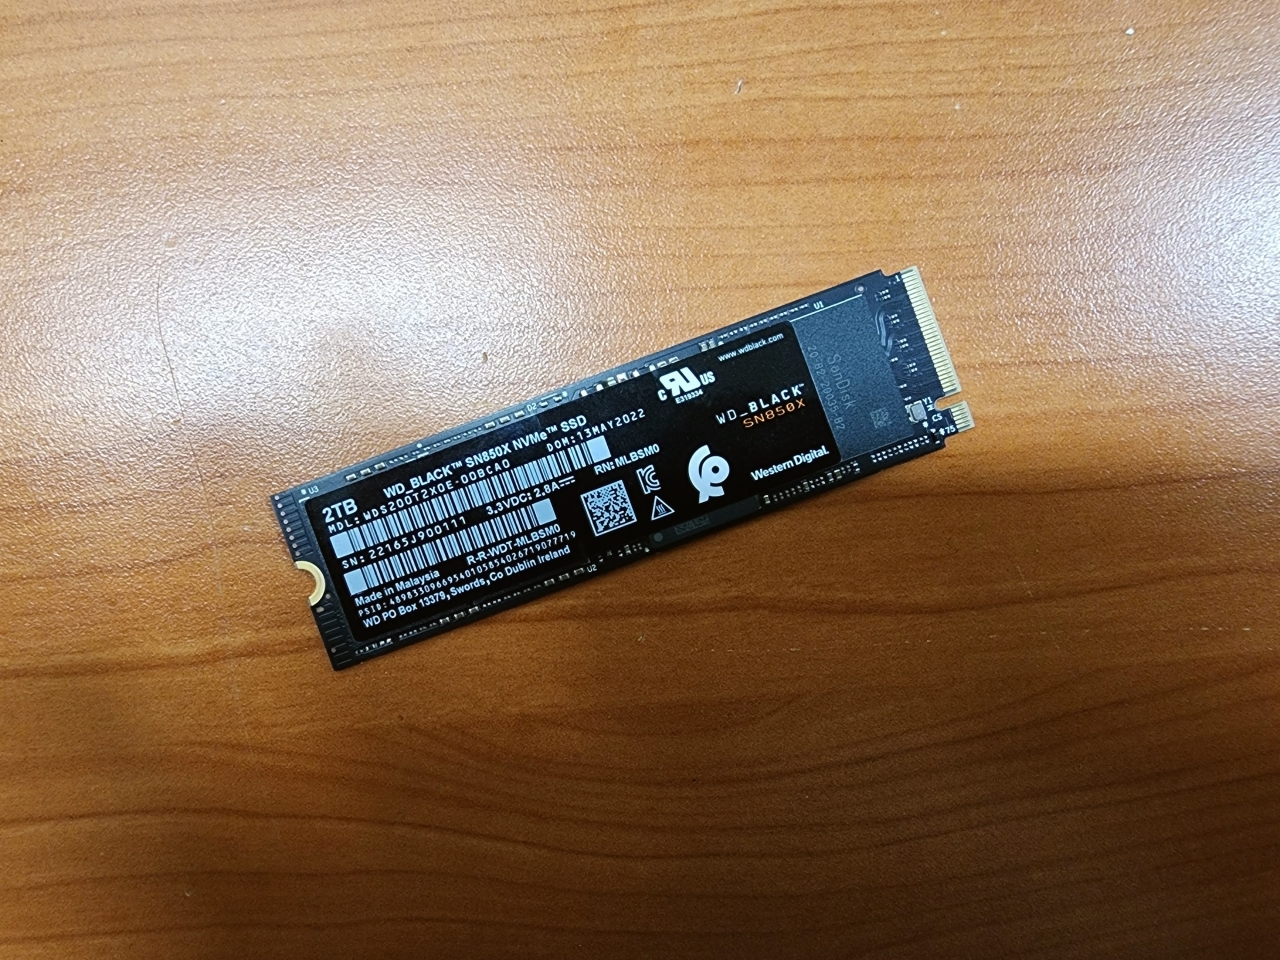 M.2 2280 폼팩터로 설계된 NVMe SSD다.